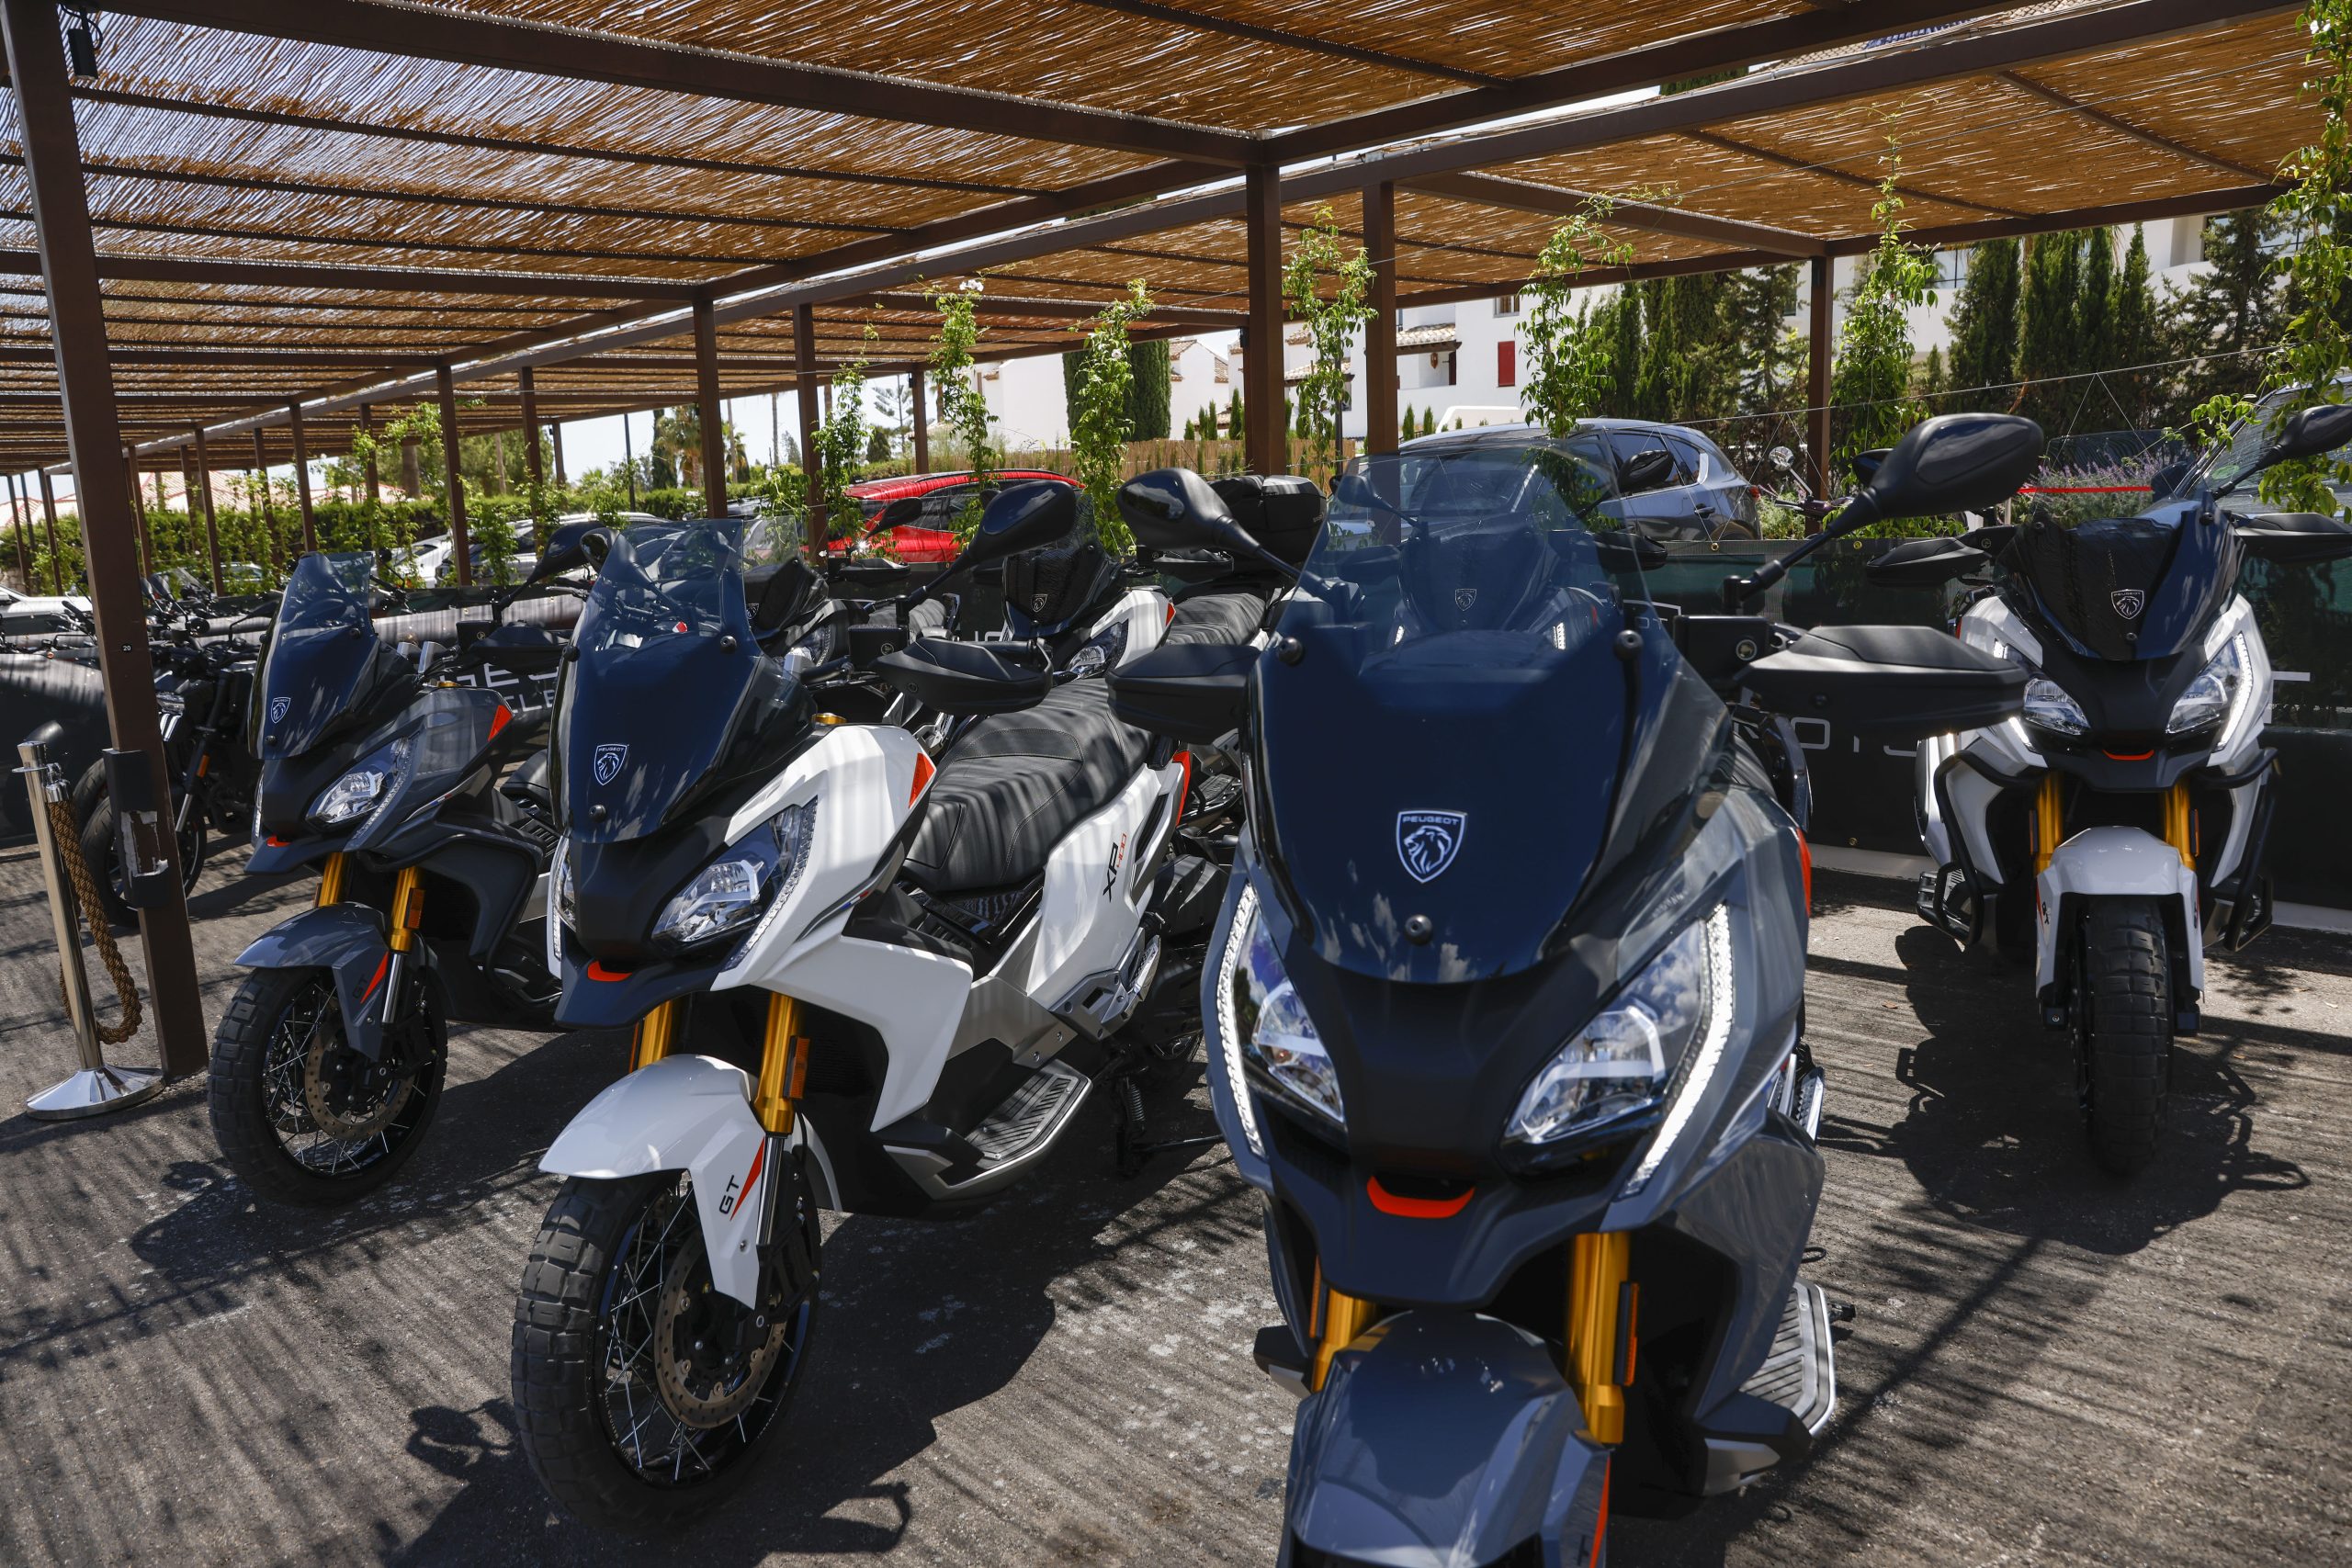 Modelos Peugeot Motocycles XP400 preparados y colocados perfectamente para el test ride de la prensa especializada